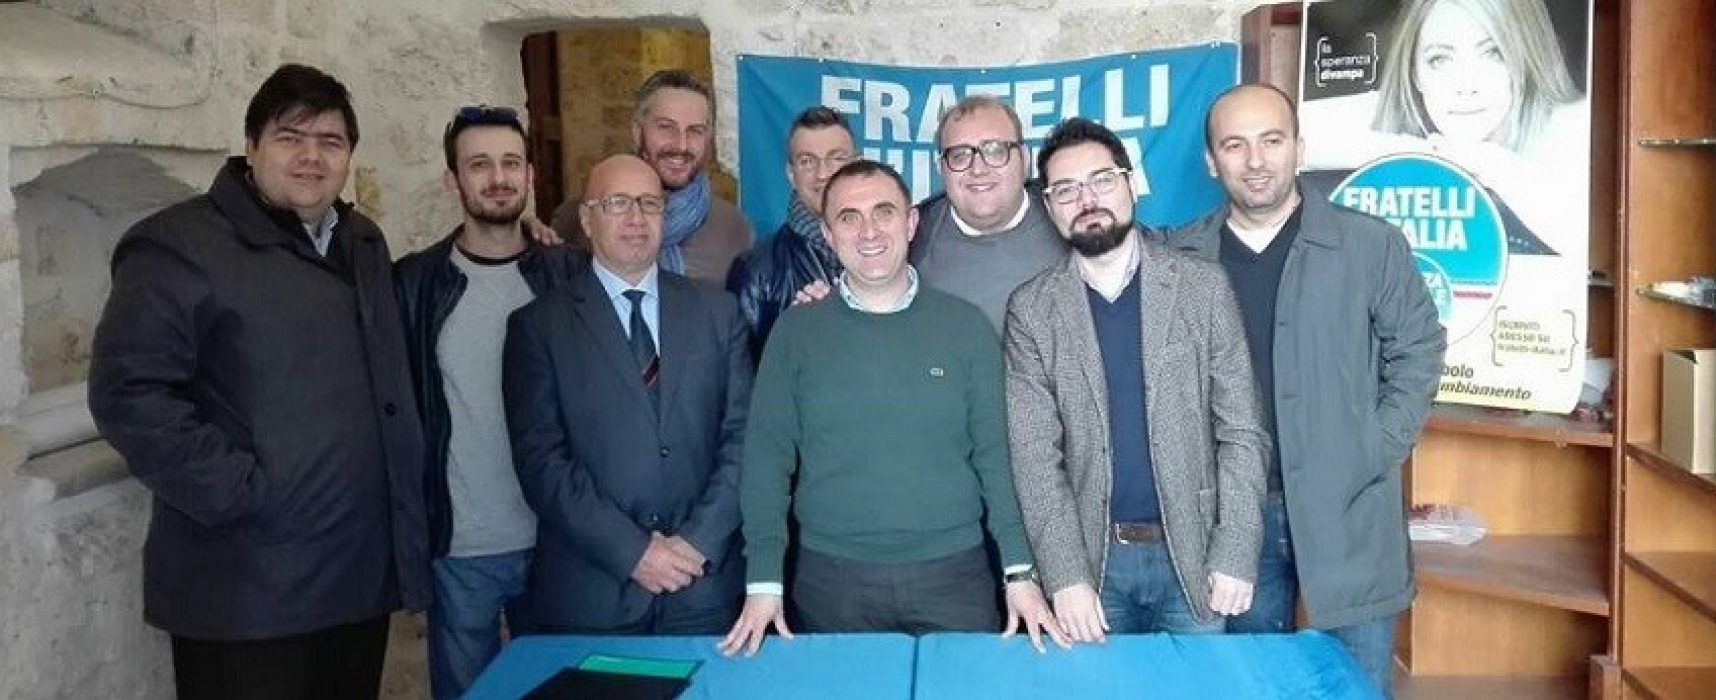 Fratelli d’Italia, concluso il congresso cittadino: Pasquale Todisco nuovo segretario